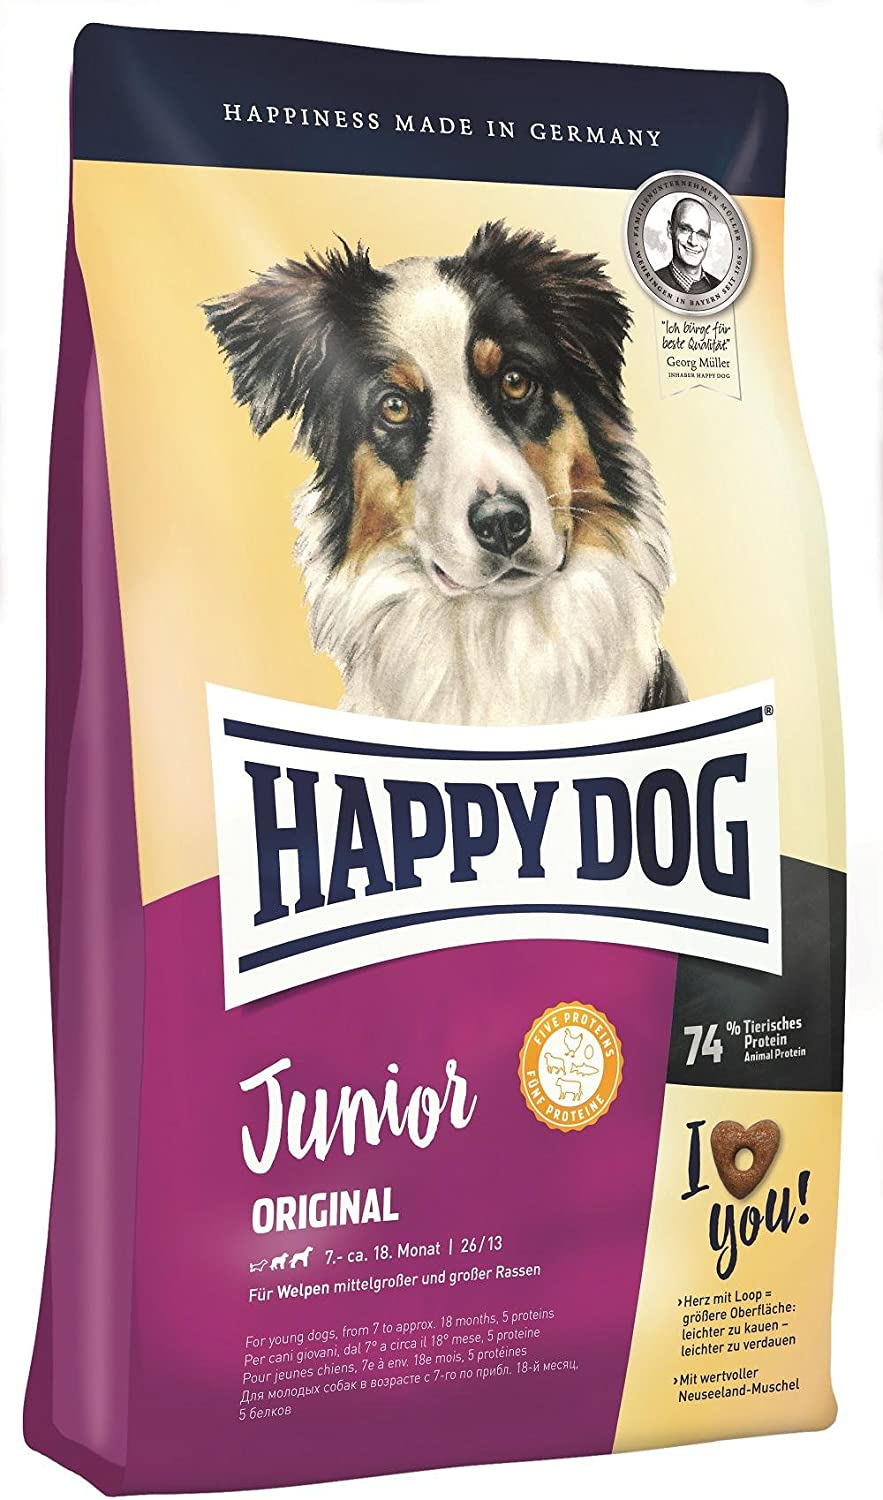 Happy Dog Supreme Young Junior Original